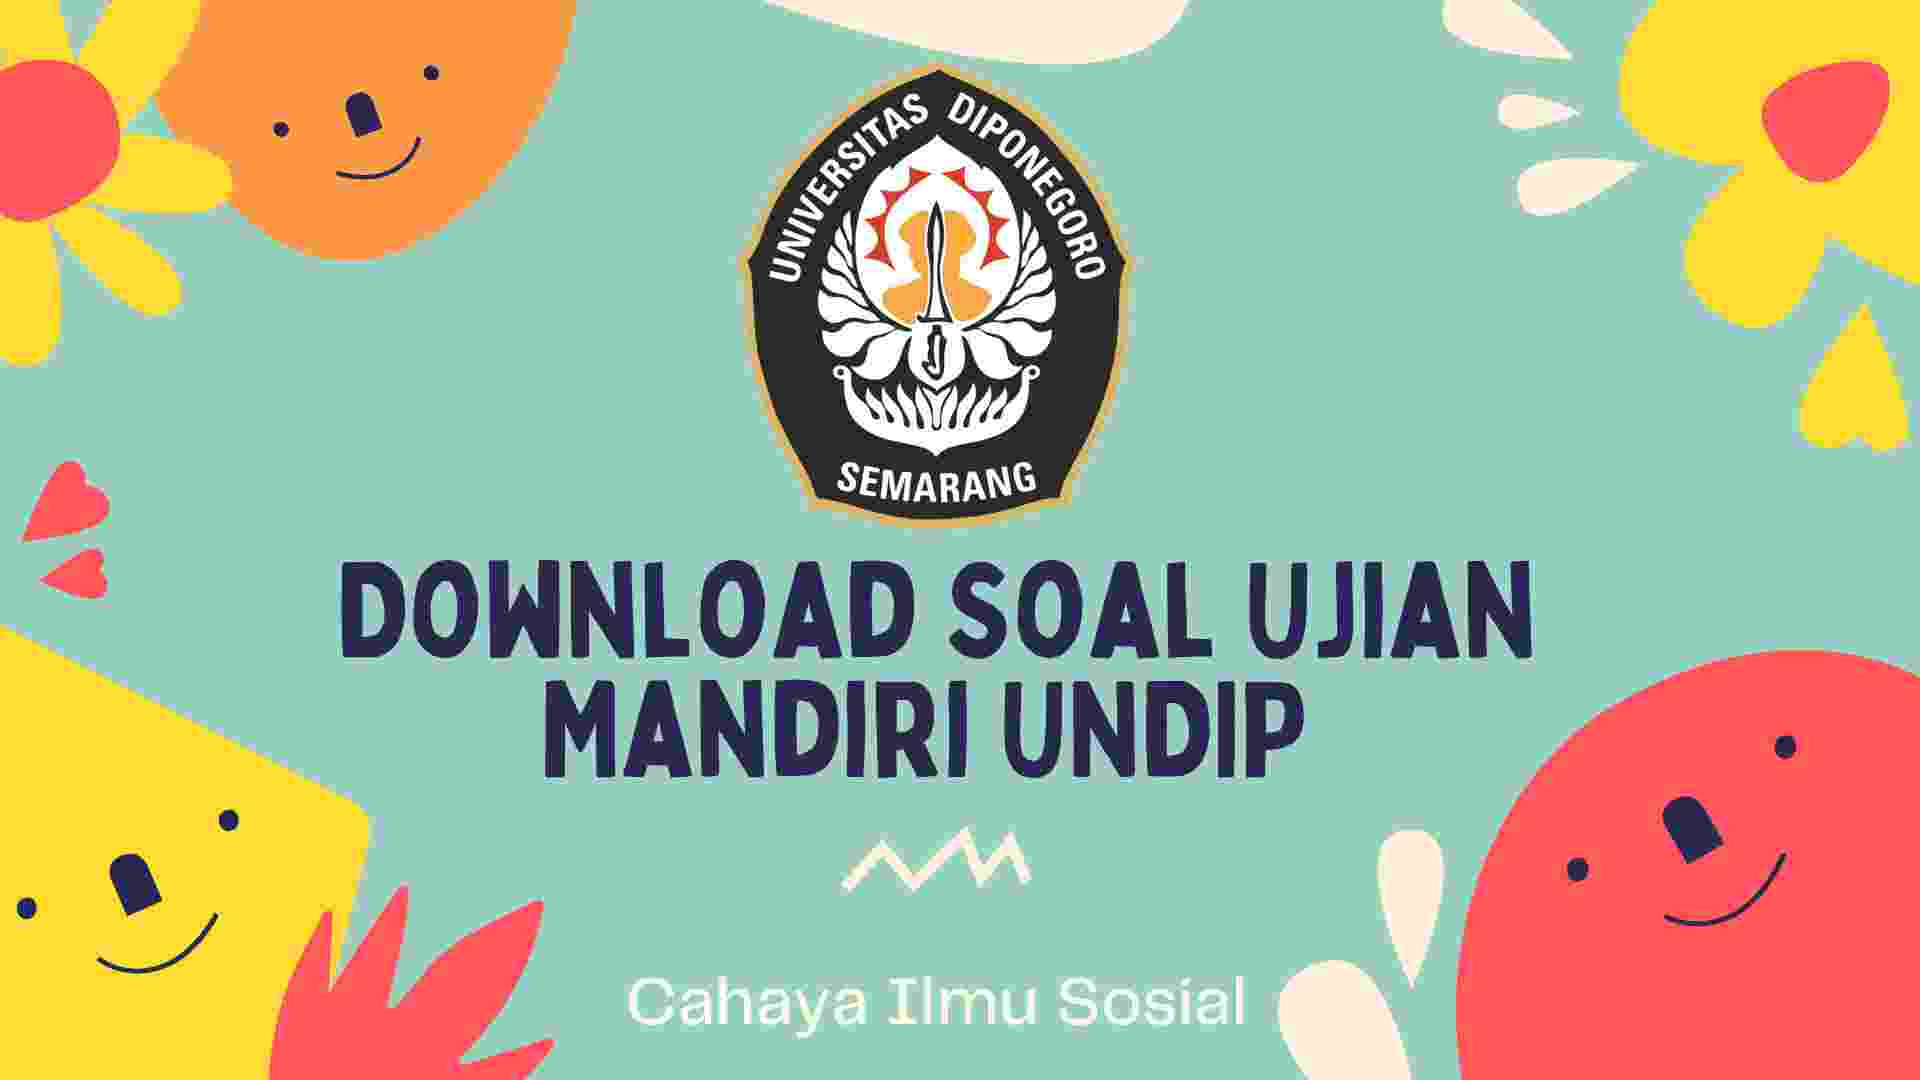 Download Soal Ujian Mandiri UNDIP, Jalur seleksi kuliah di Universitas Diponegoro(UNDIP) salah satunya adalah seleksi mandiri.